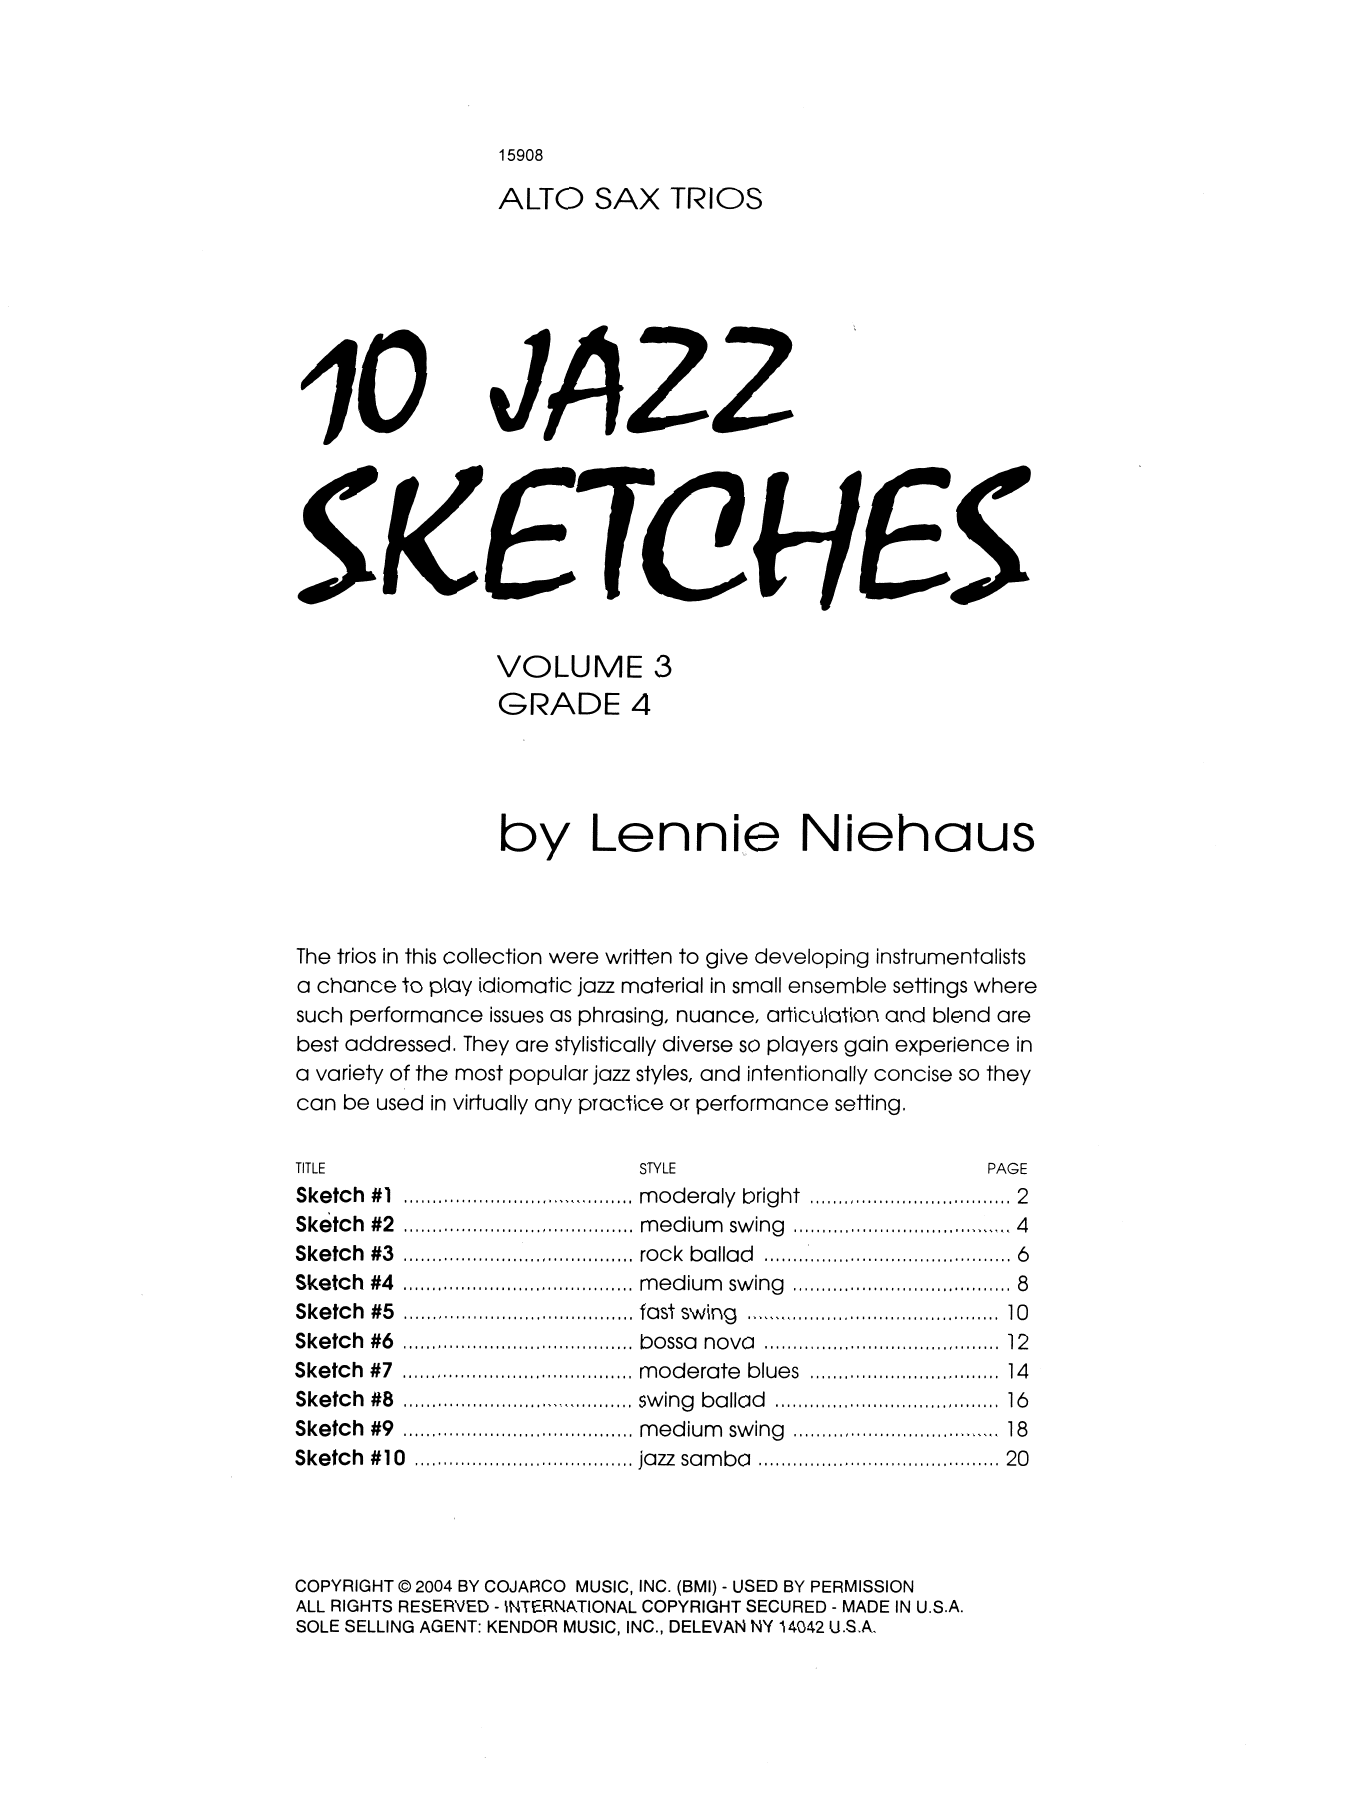 10 Jazz Sketches, Volume 3 (altos) (Woodwind Ensemble) von Lennie Niehaus